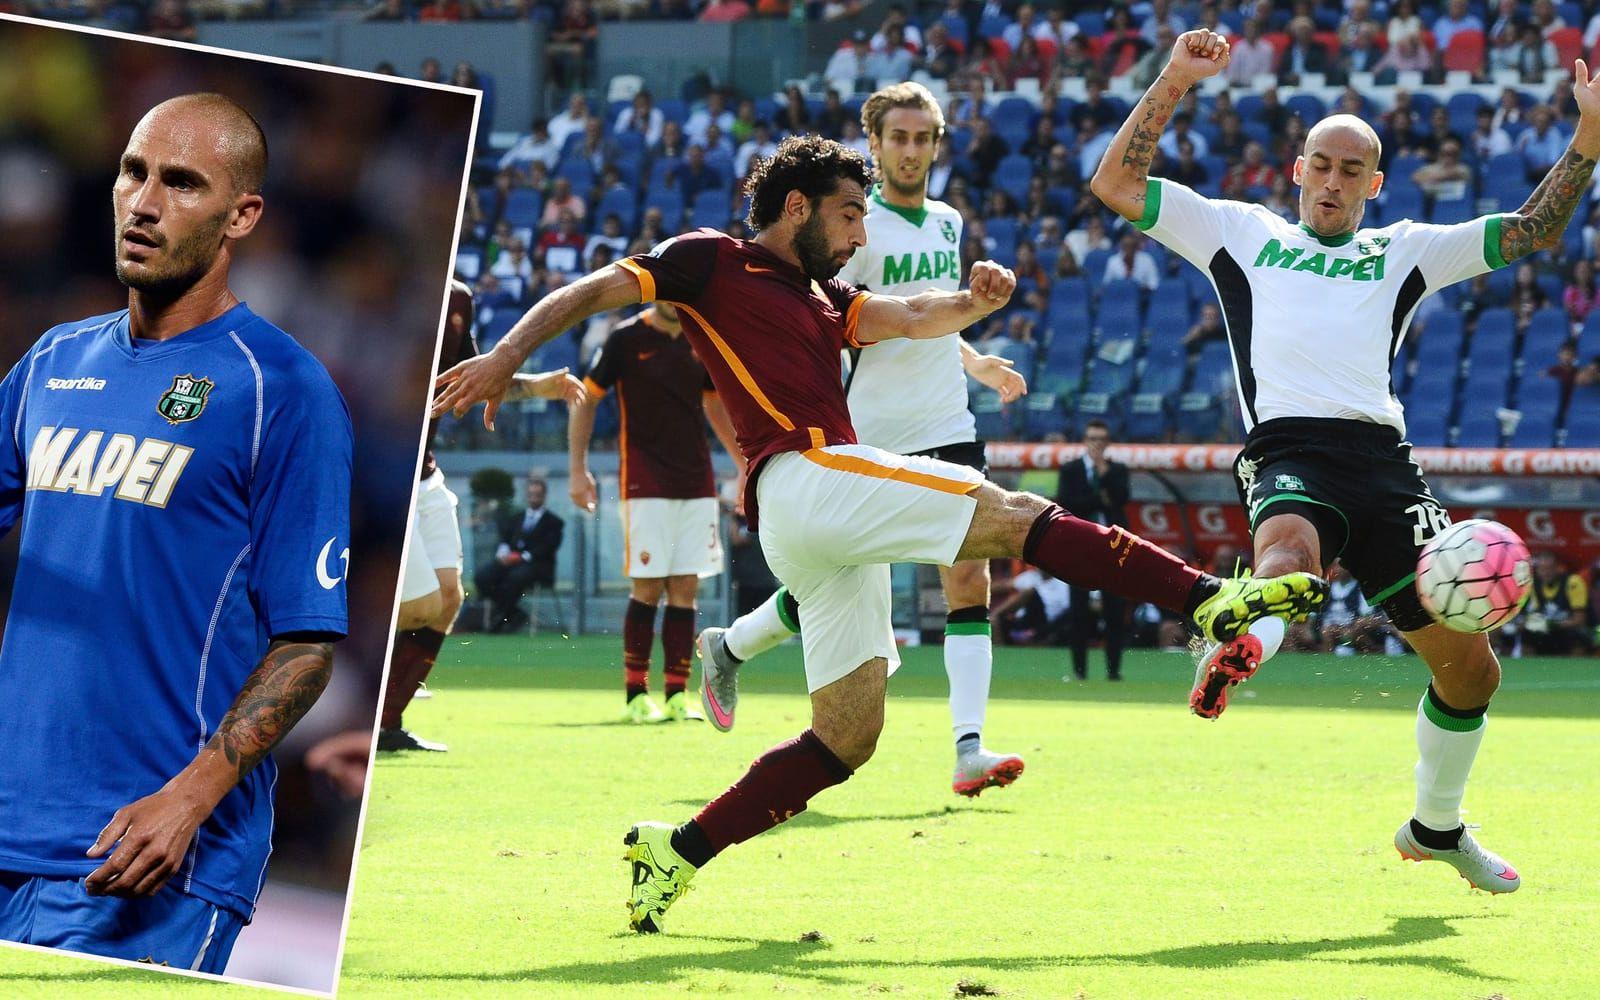 Lillebror Cannavaro spelar fortfarande, nu i Serie A-laget Sassuolo, och har gjort flera fina säsonger i den italienska högstaligan. Men har man en storebror som har vunnit Ballon d'Or, ja då är man tvåa i familjen. Foto: Bildbyrån